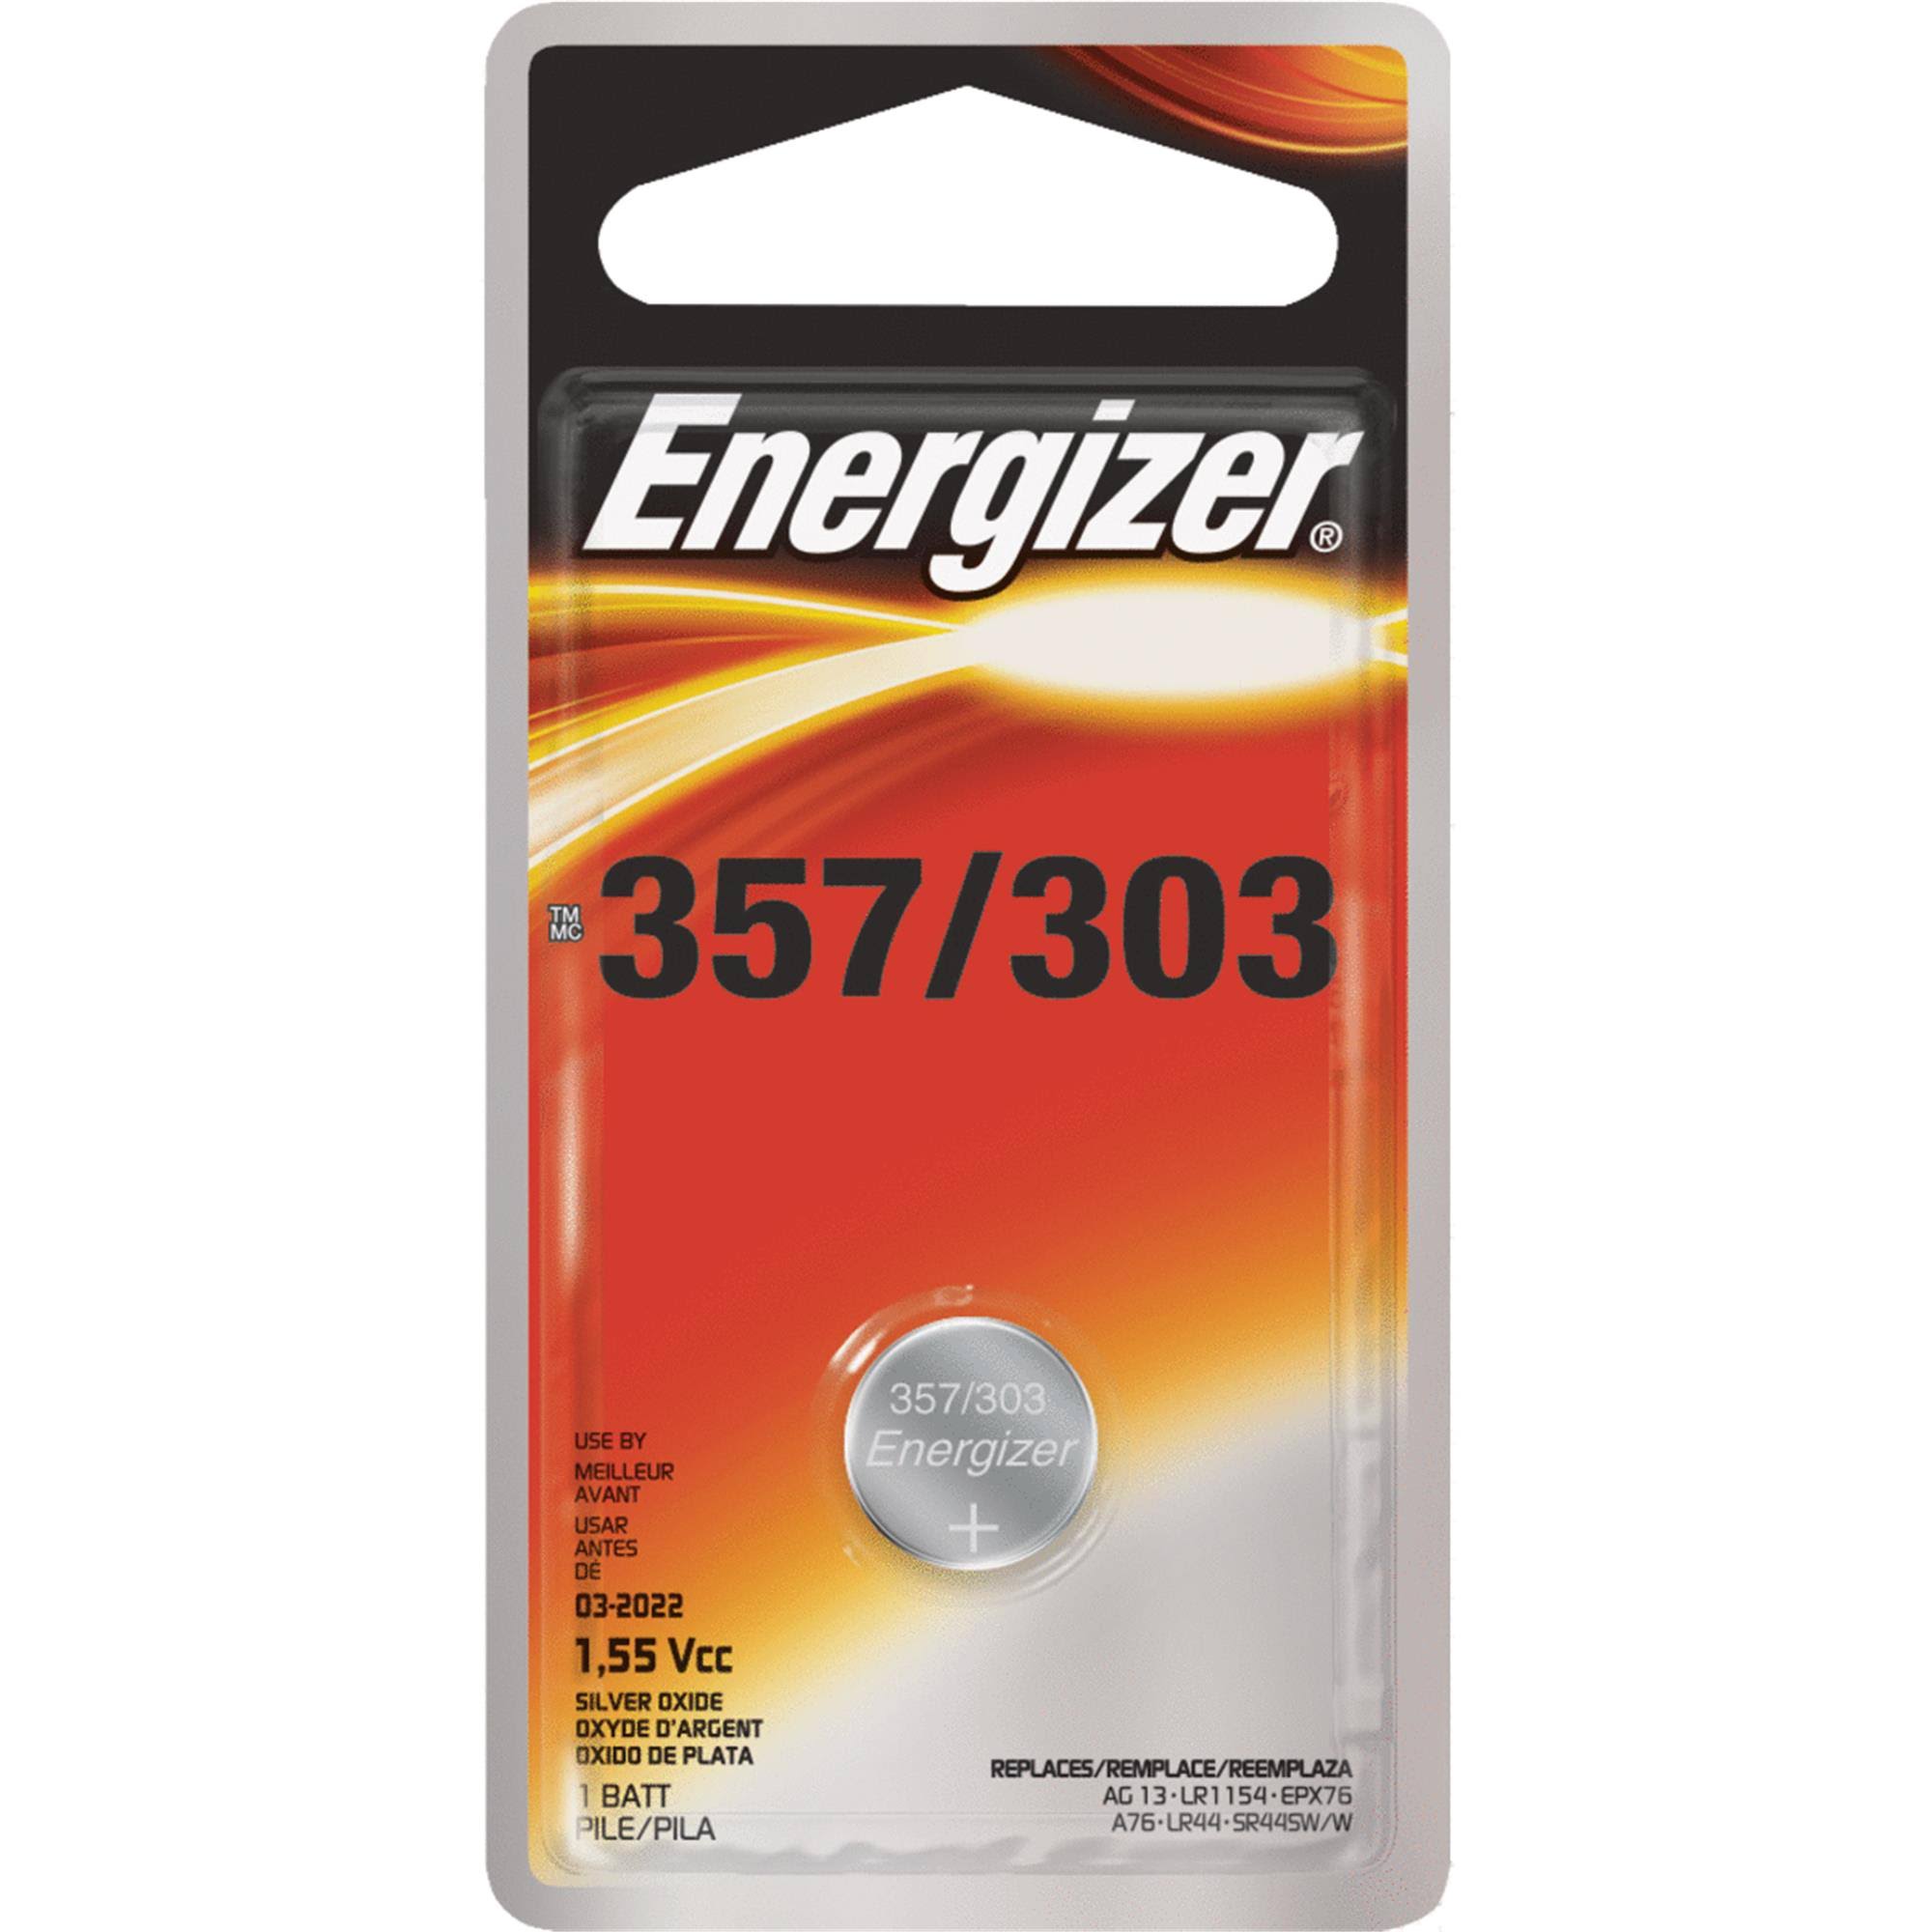 Energizer Silver Oxide 357 303 Battery - 1.5V